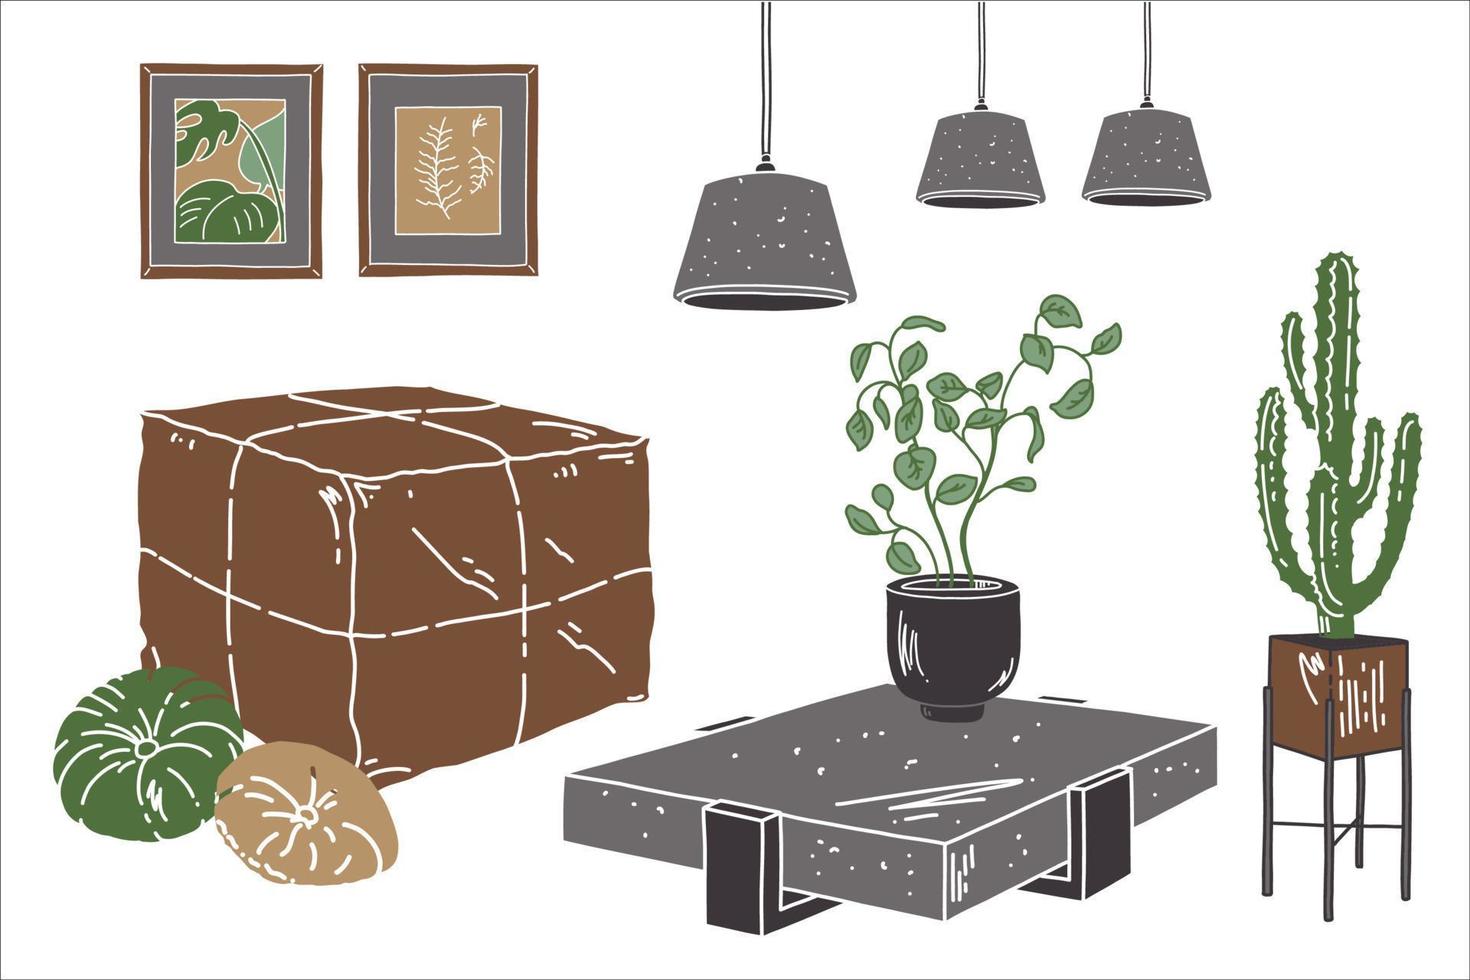 schets woonappartement. loft-stijl meubels in de woonkamer. platte vectorillustratie met bruine poef, lamp, kussen, tafel en huisplanten. vector